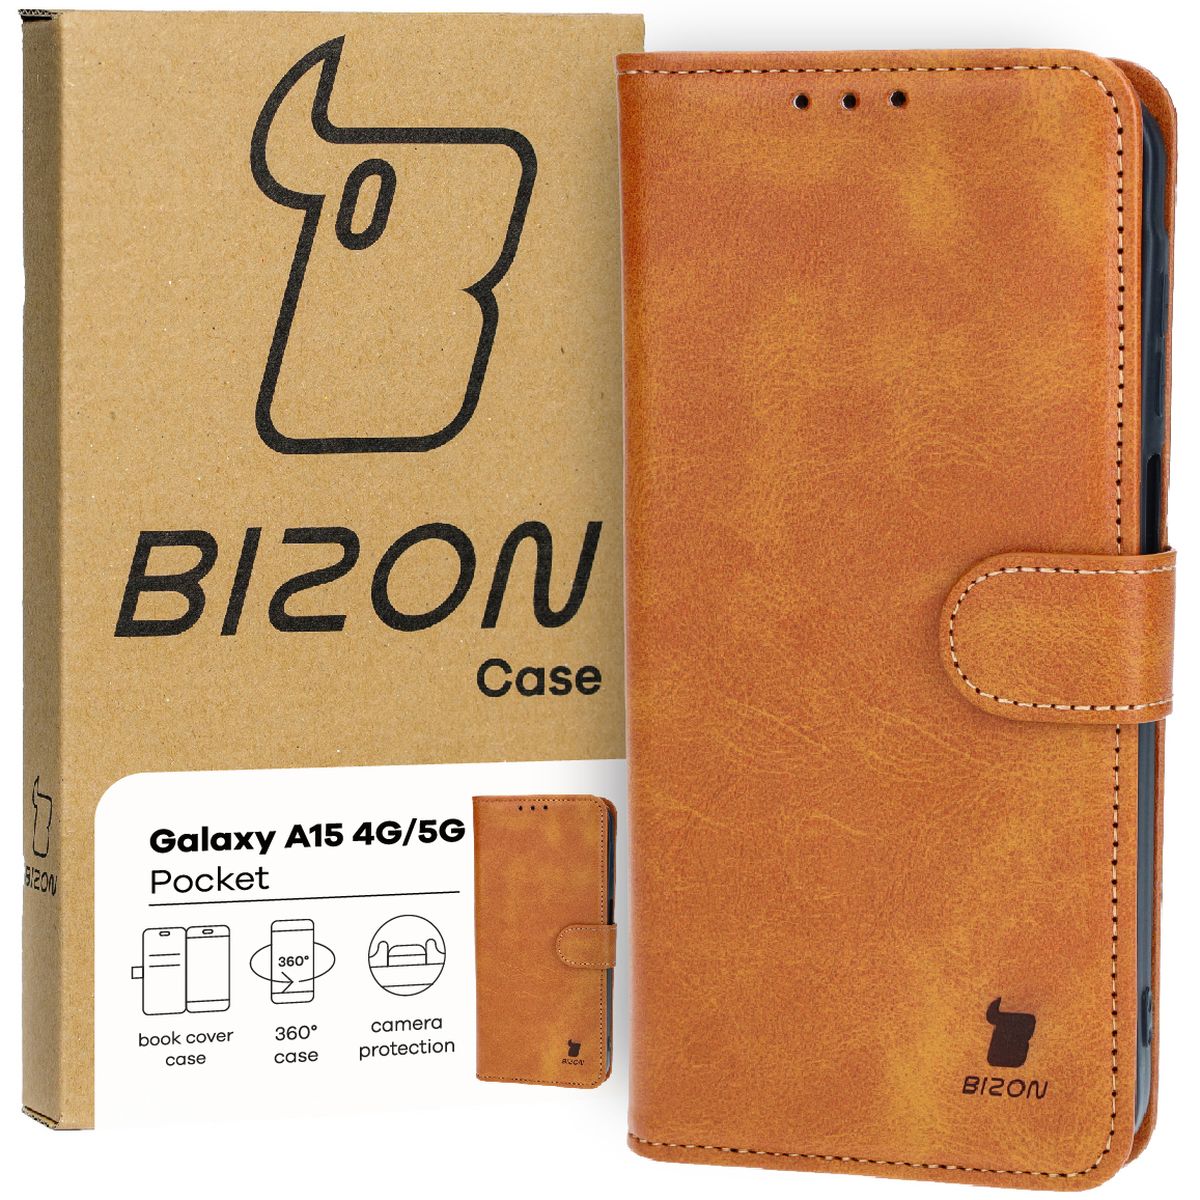 Schutzhülle für Galaxy A15 4G/5G, Bizon Case Pocket, Braun